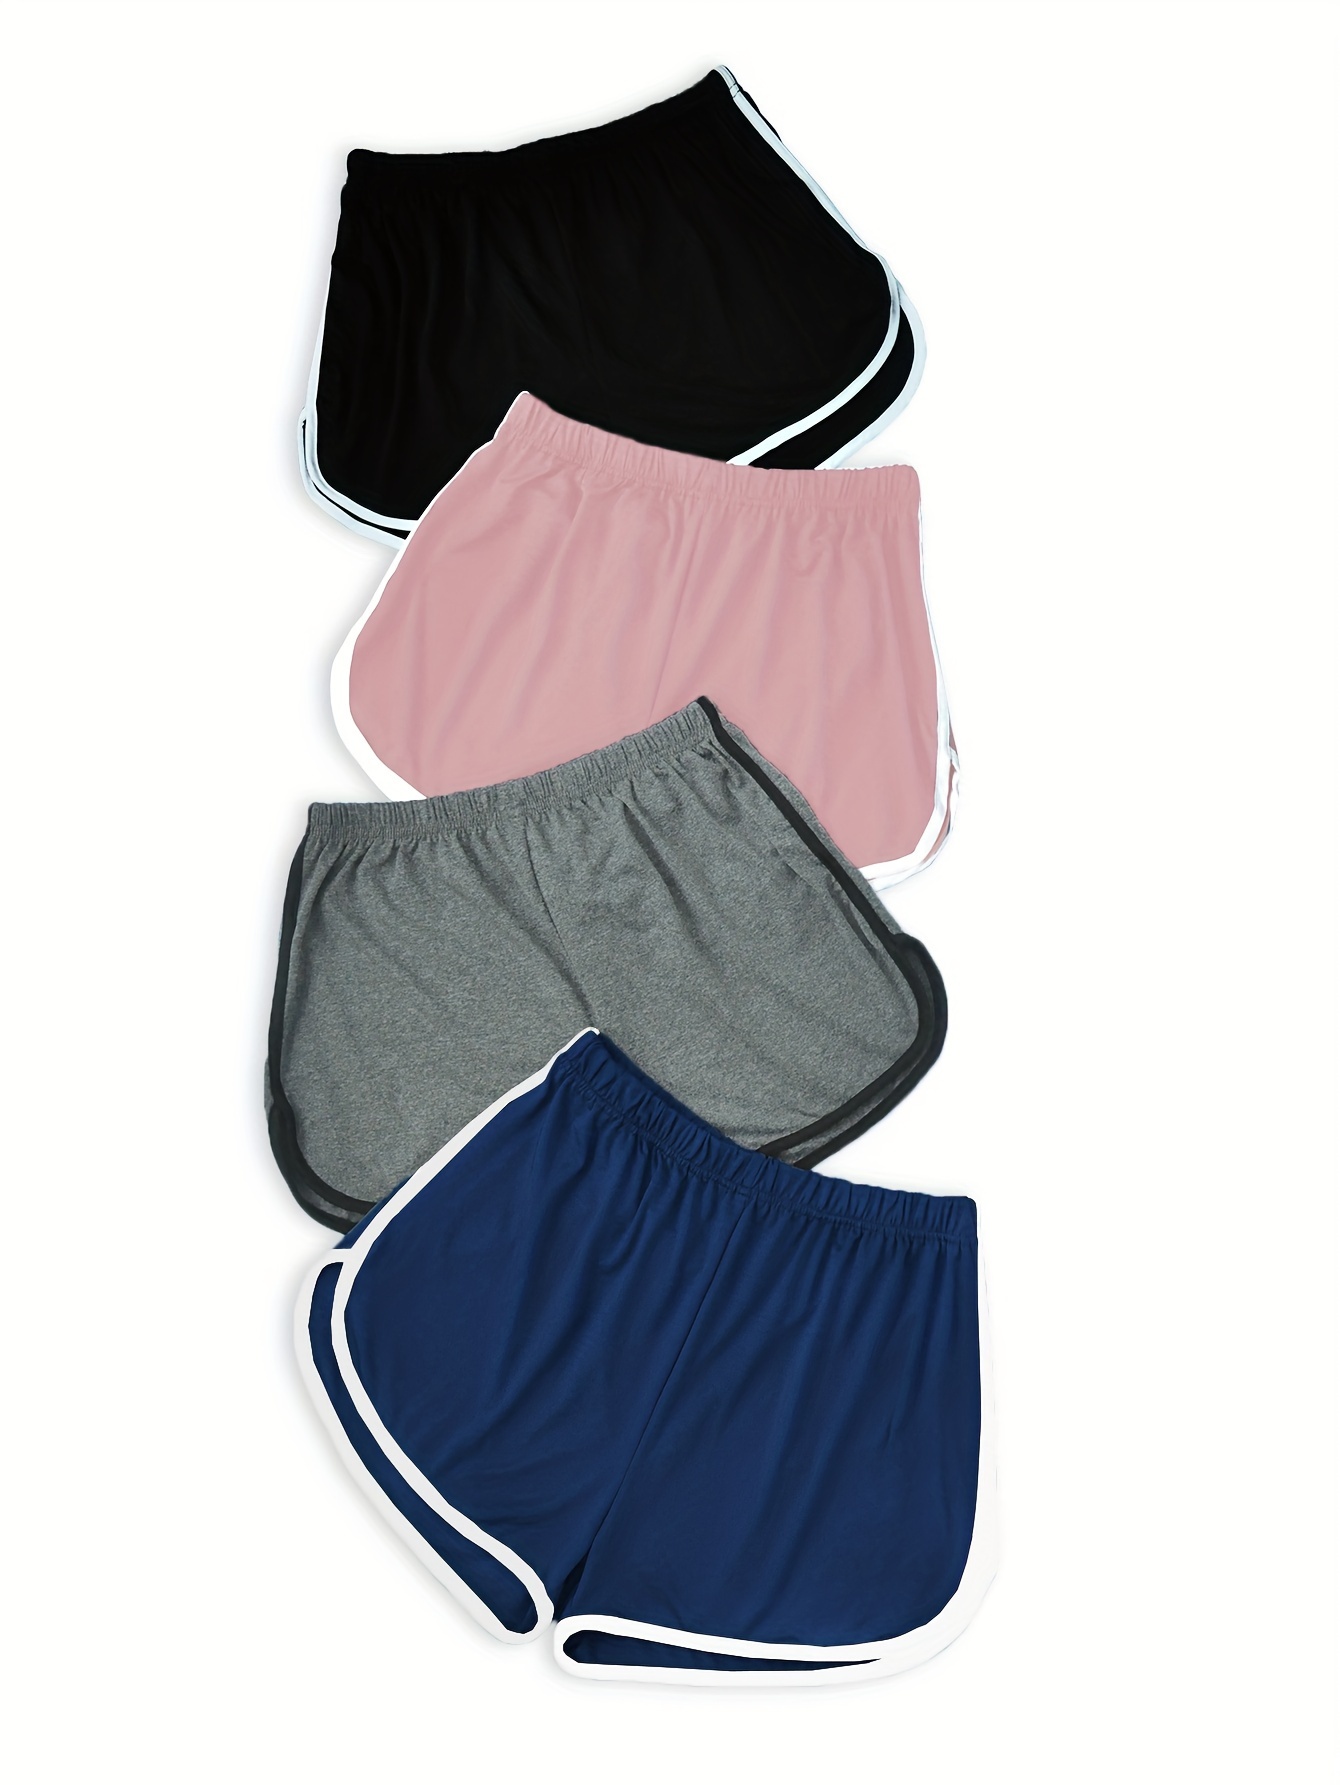 Beauty_yoyo Dolphin Shorts for Teen Girls & Women Cotton Running